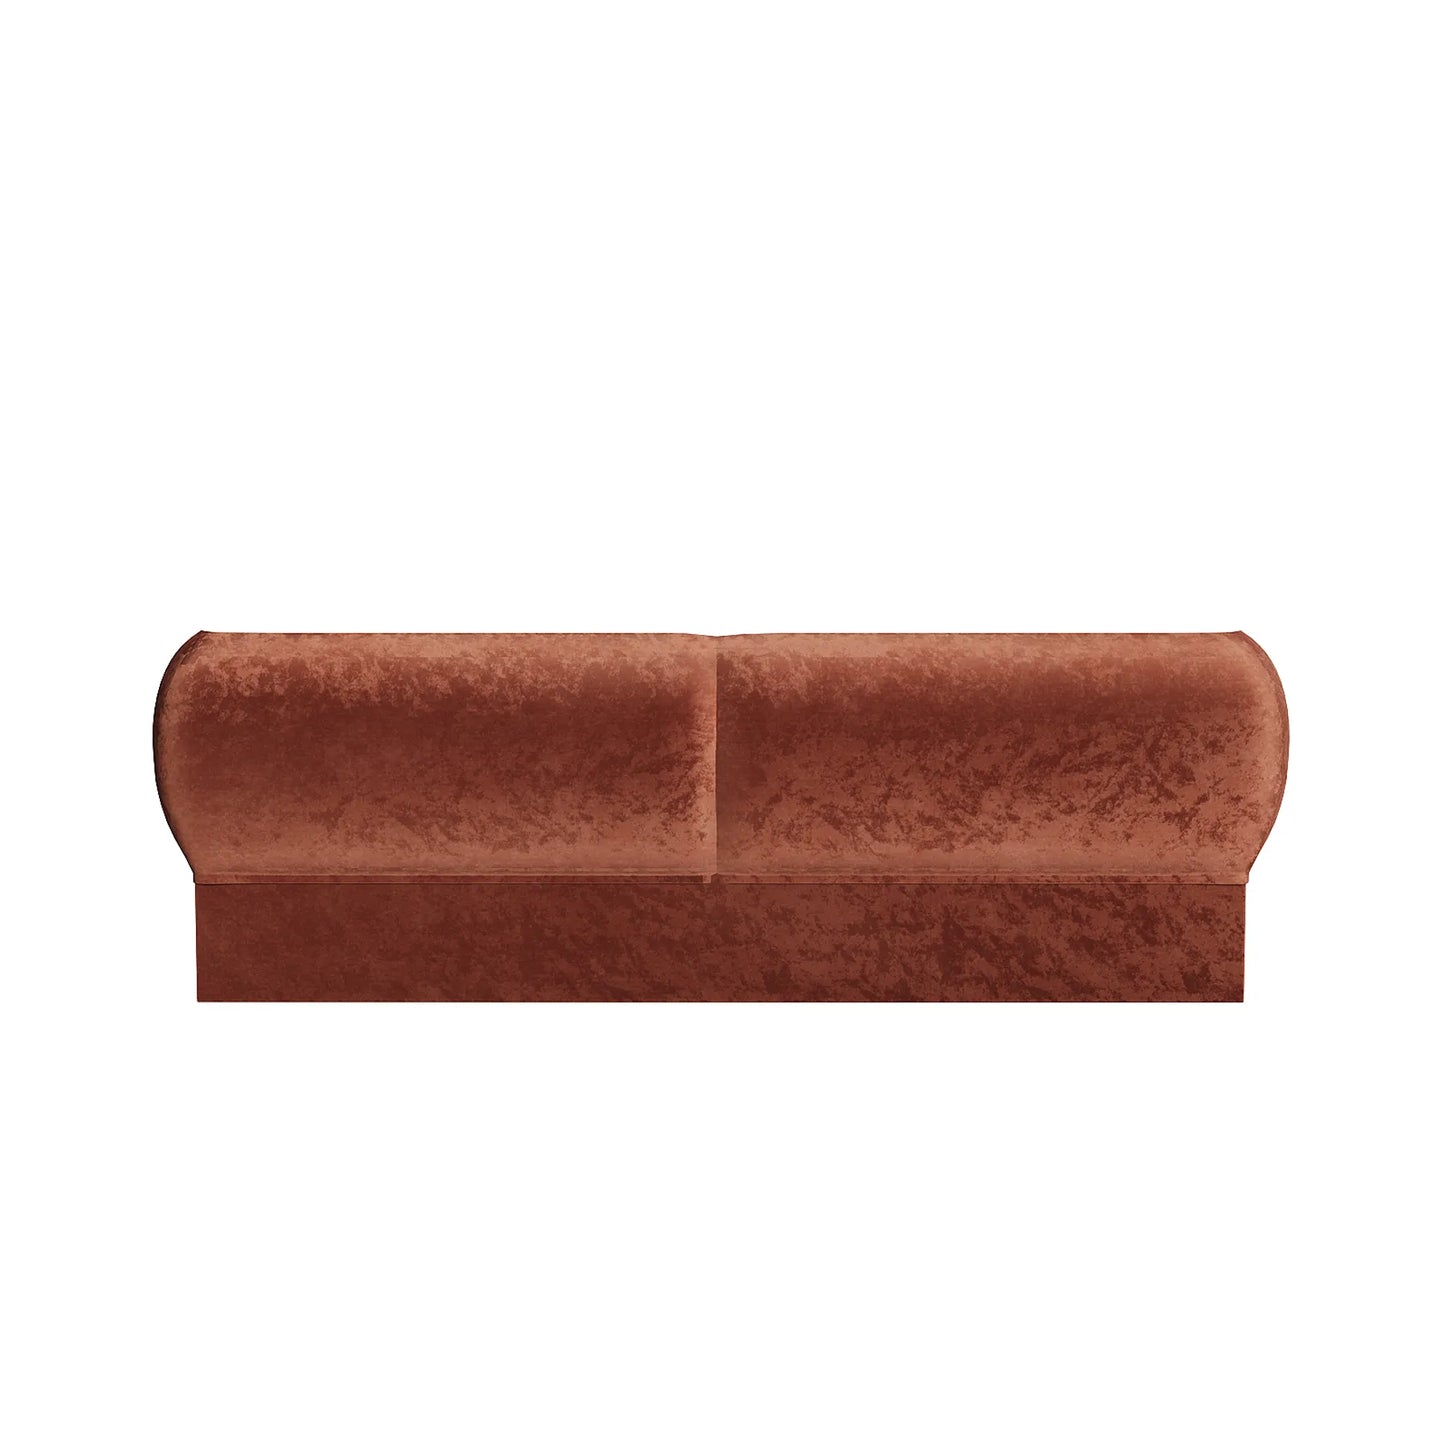 Tulip 3 Seater Sofa - Decent Cinnamon